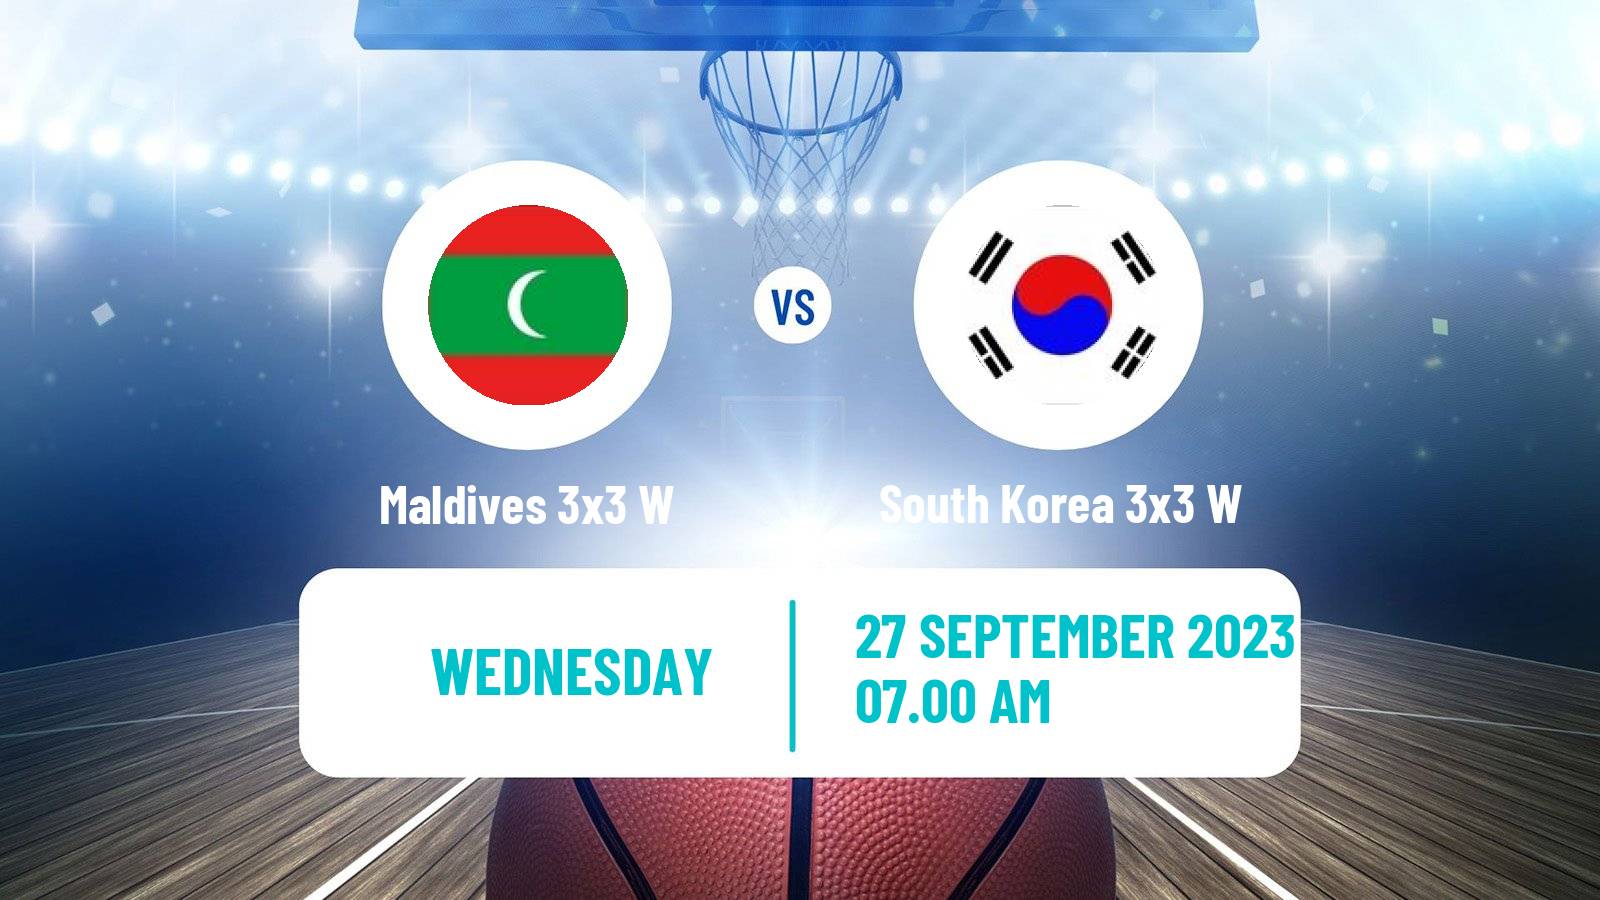 Basketball Asian Games Basketball 3x3 Women Maldives 3x3 W - South Korea 3x3 W